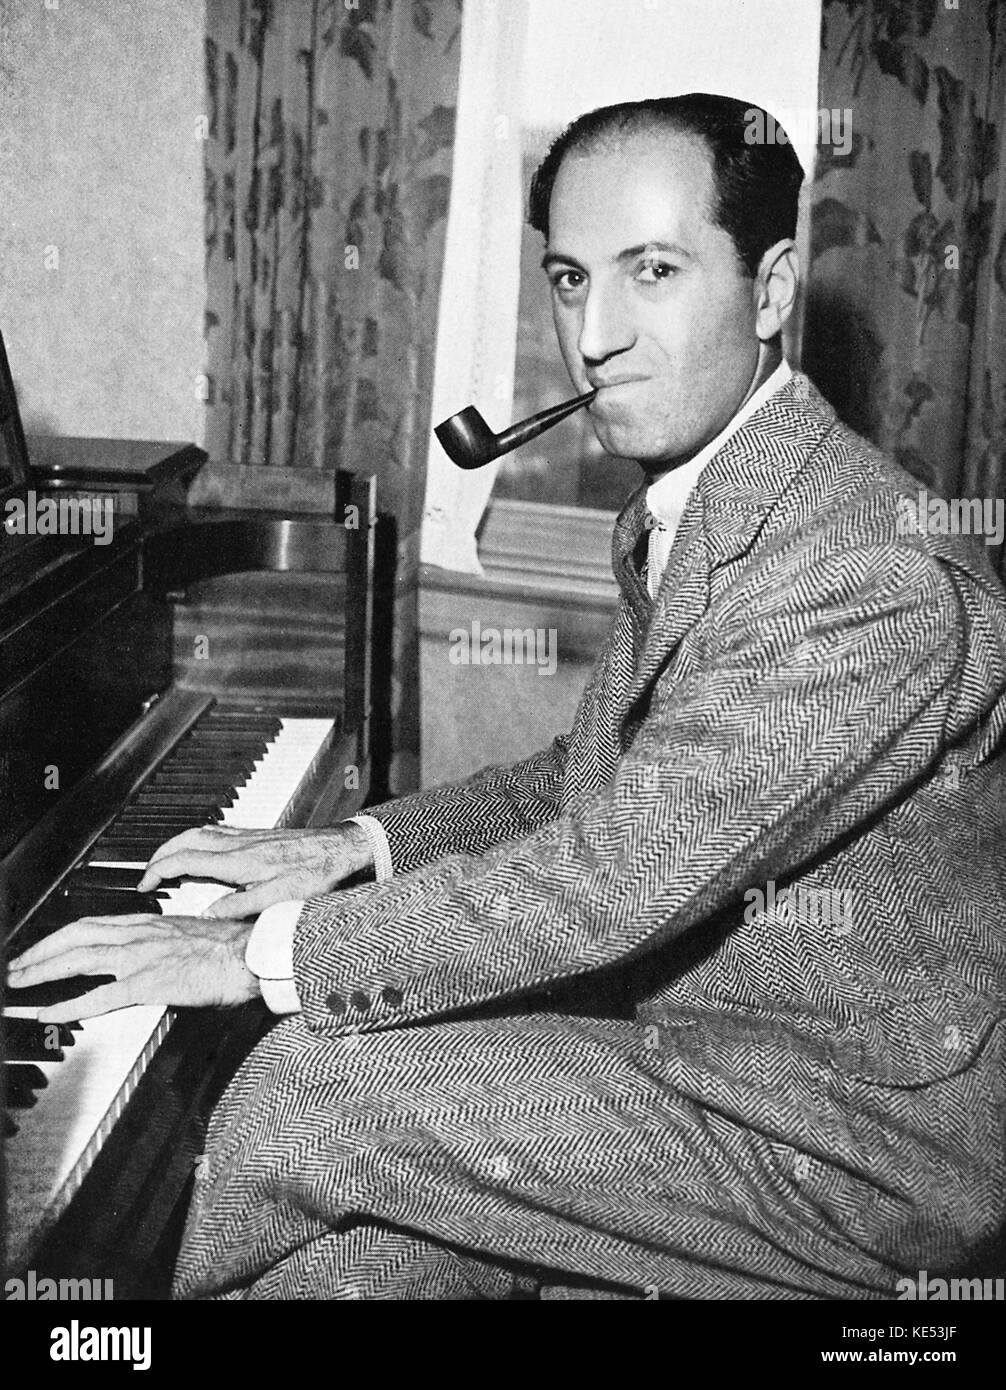 George Gershwin: tocando el piano con pipa en la boca. Pianista y compositor norteamericano, el 26 de septiembre de 1898 - 11 de julio de 1937 Foto de stock